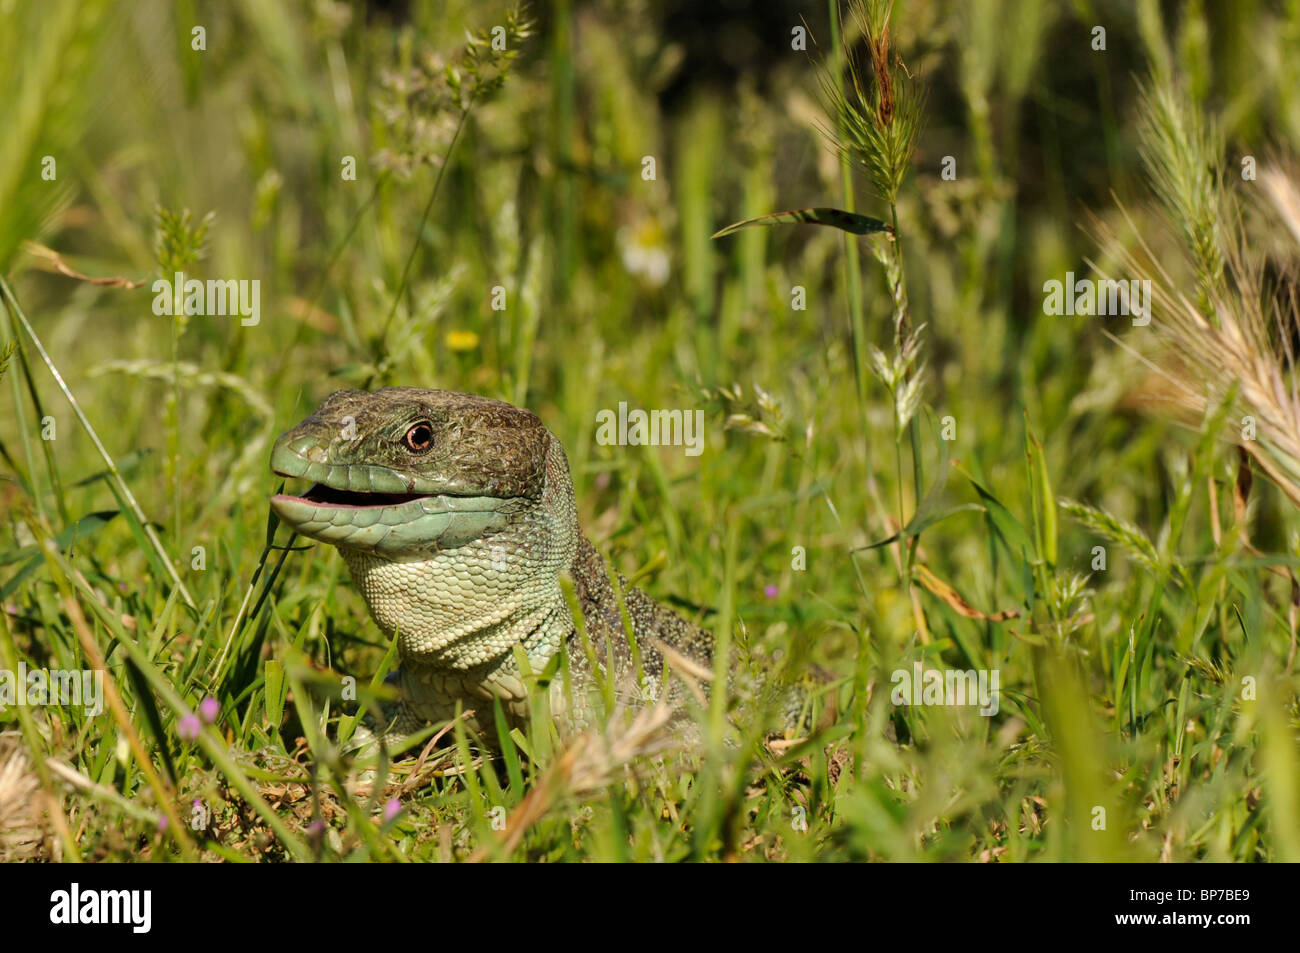 Ocellated lizard, ocellated ramarro, eyed lizard, jewelled lizard (Lacerta lepida), guardando fuori dell'erba di un prato, Foto Stock